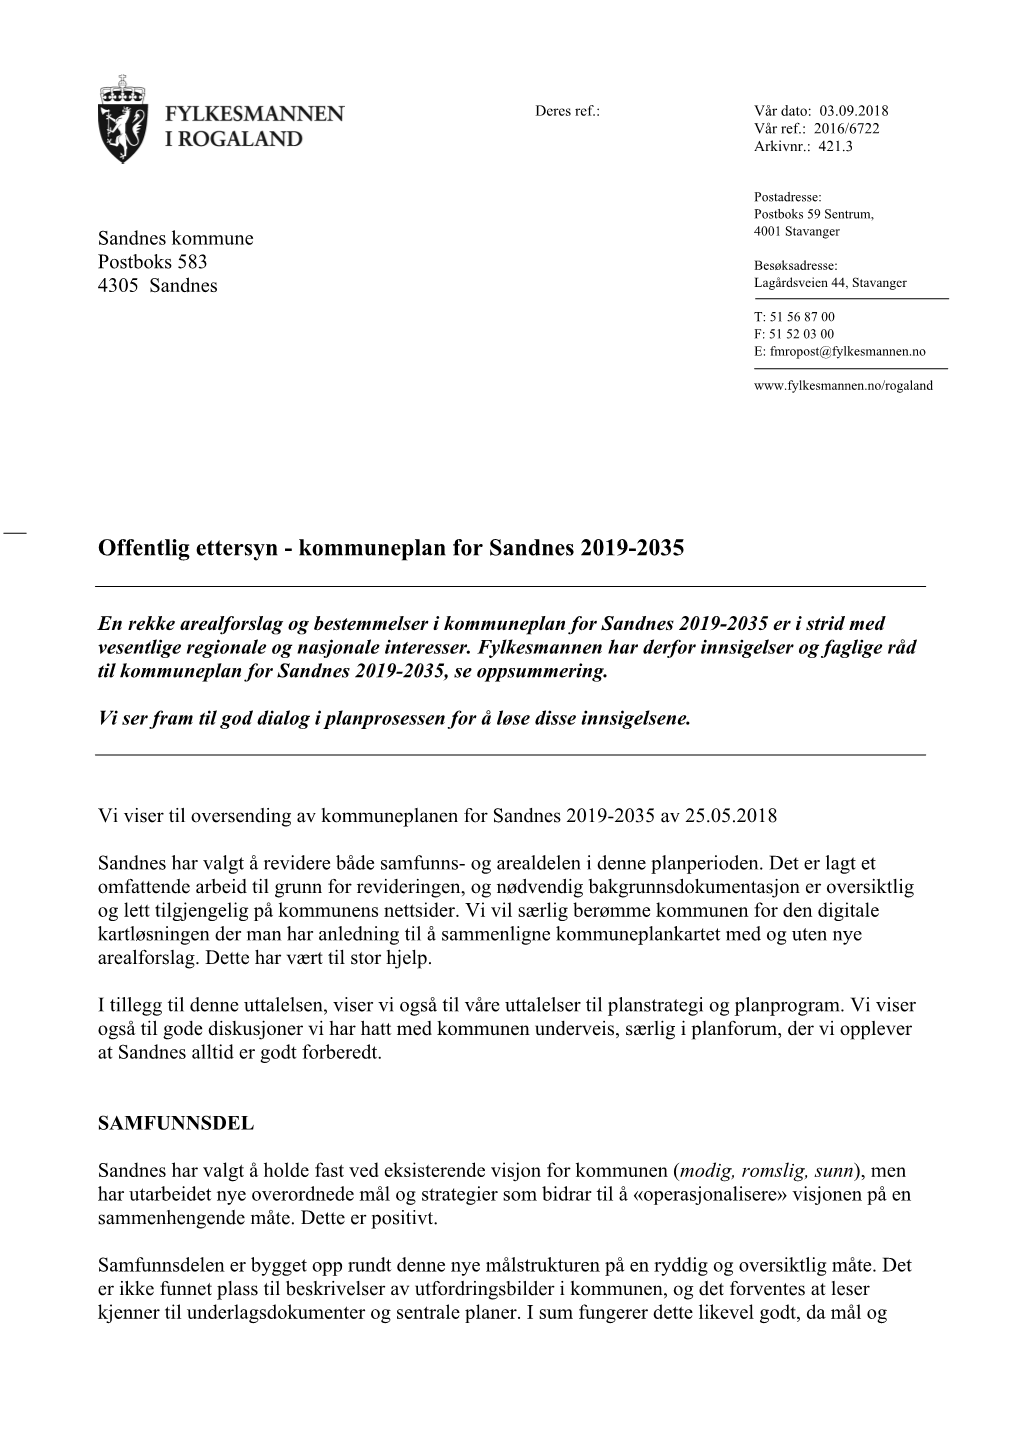 Offentlig Ettersyn - Kommuneplan for Sandnes 2019-2035